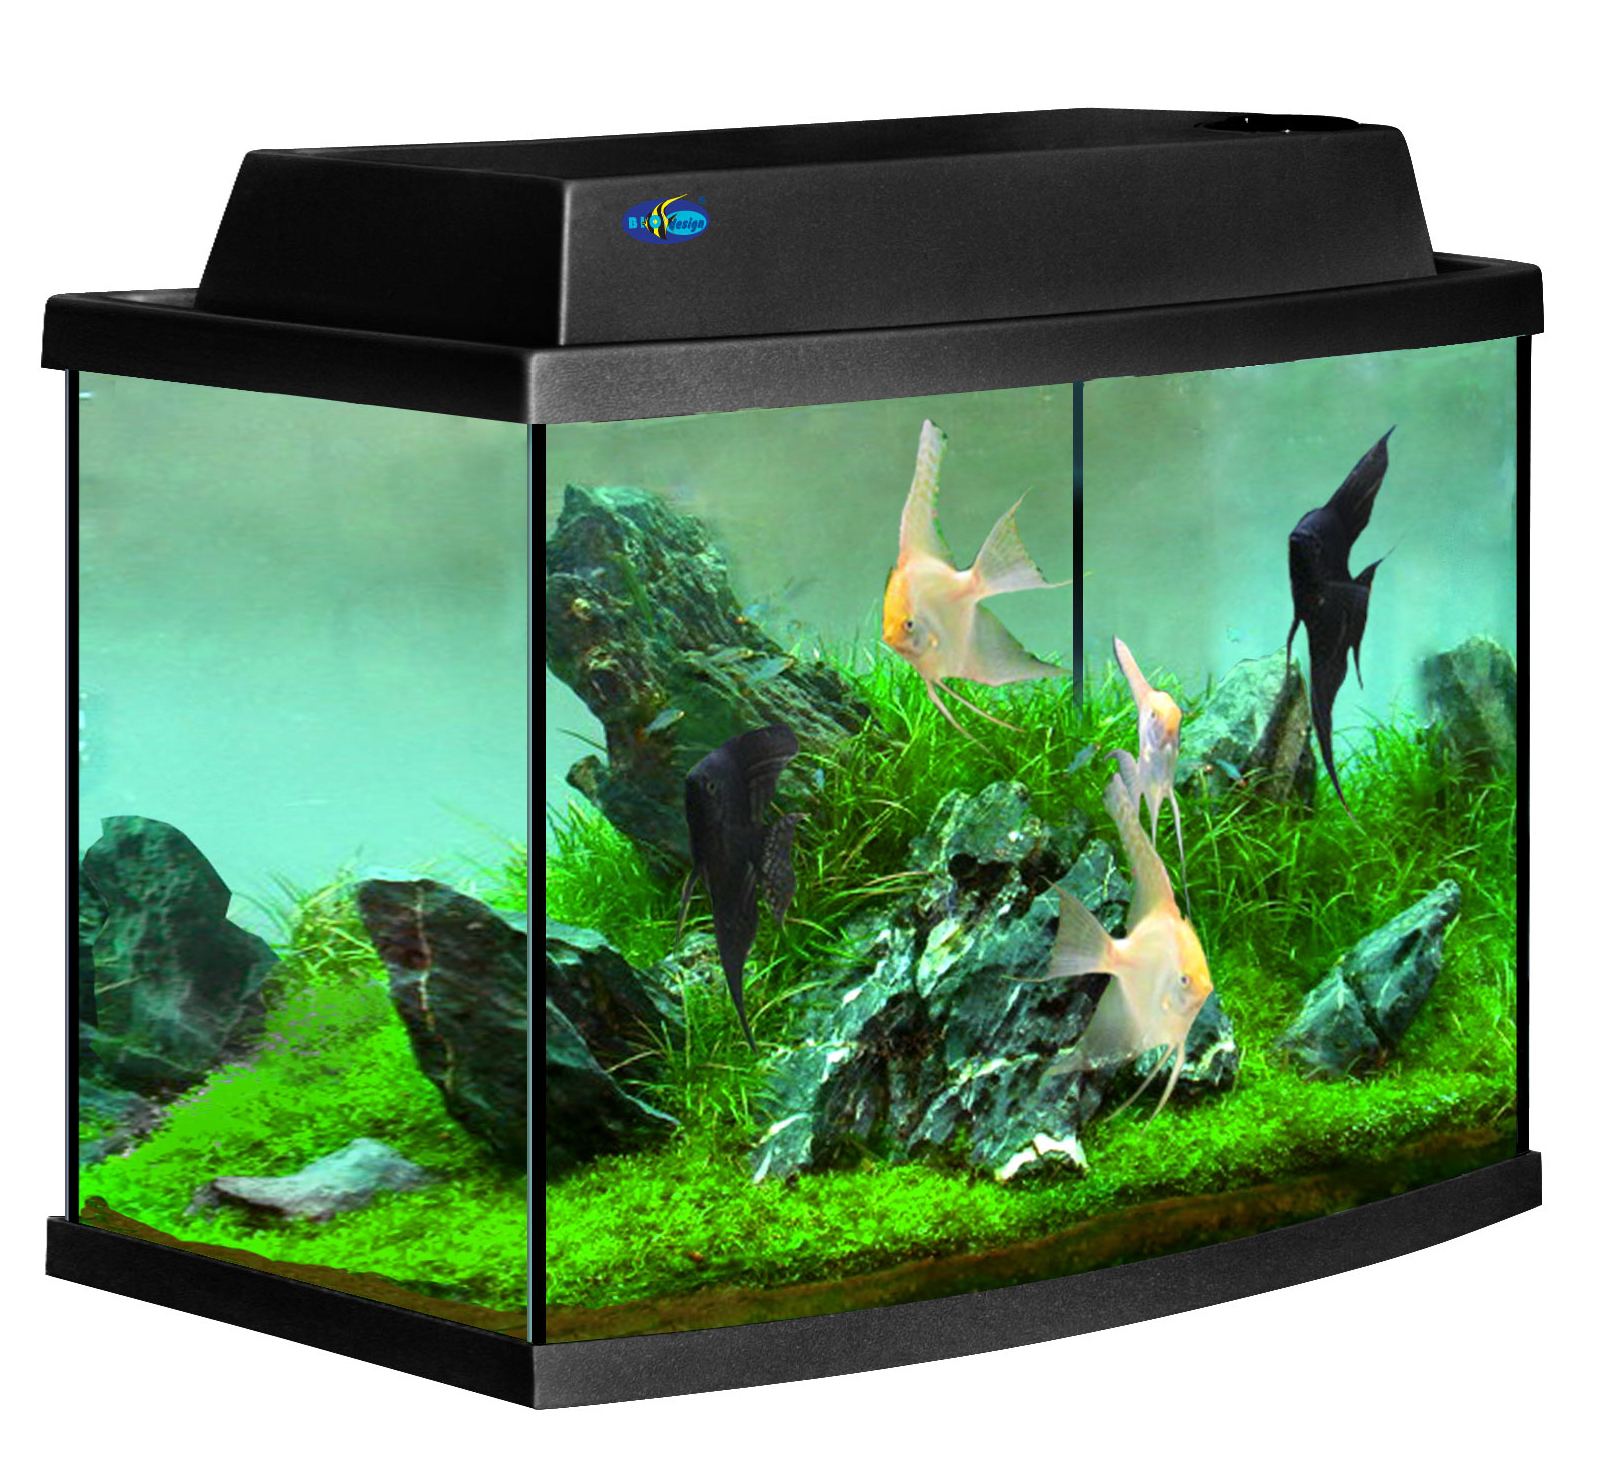 Тетра дом. Панорамный аквариум 50л. Рыбки для аквариума. Красивые аквариумы. Небольшой аквариум с рыбками.